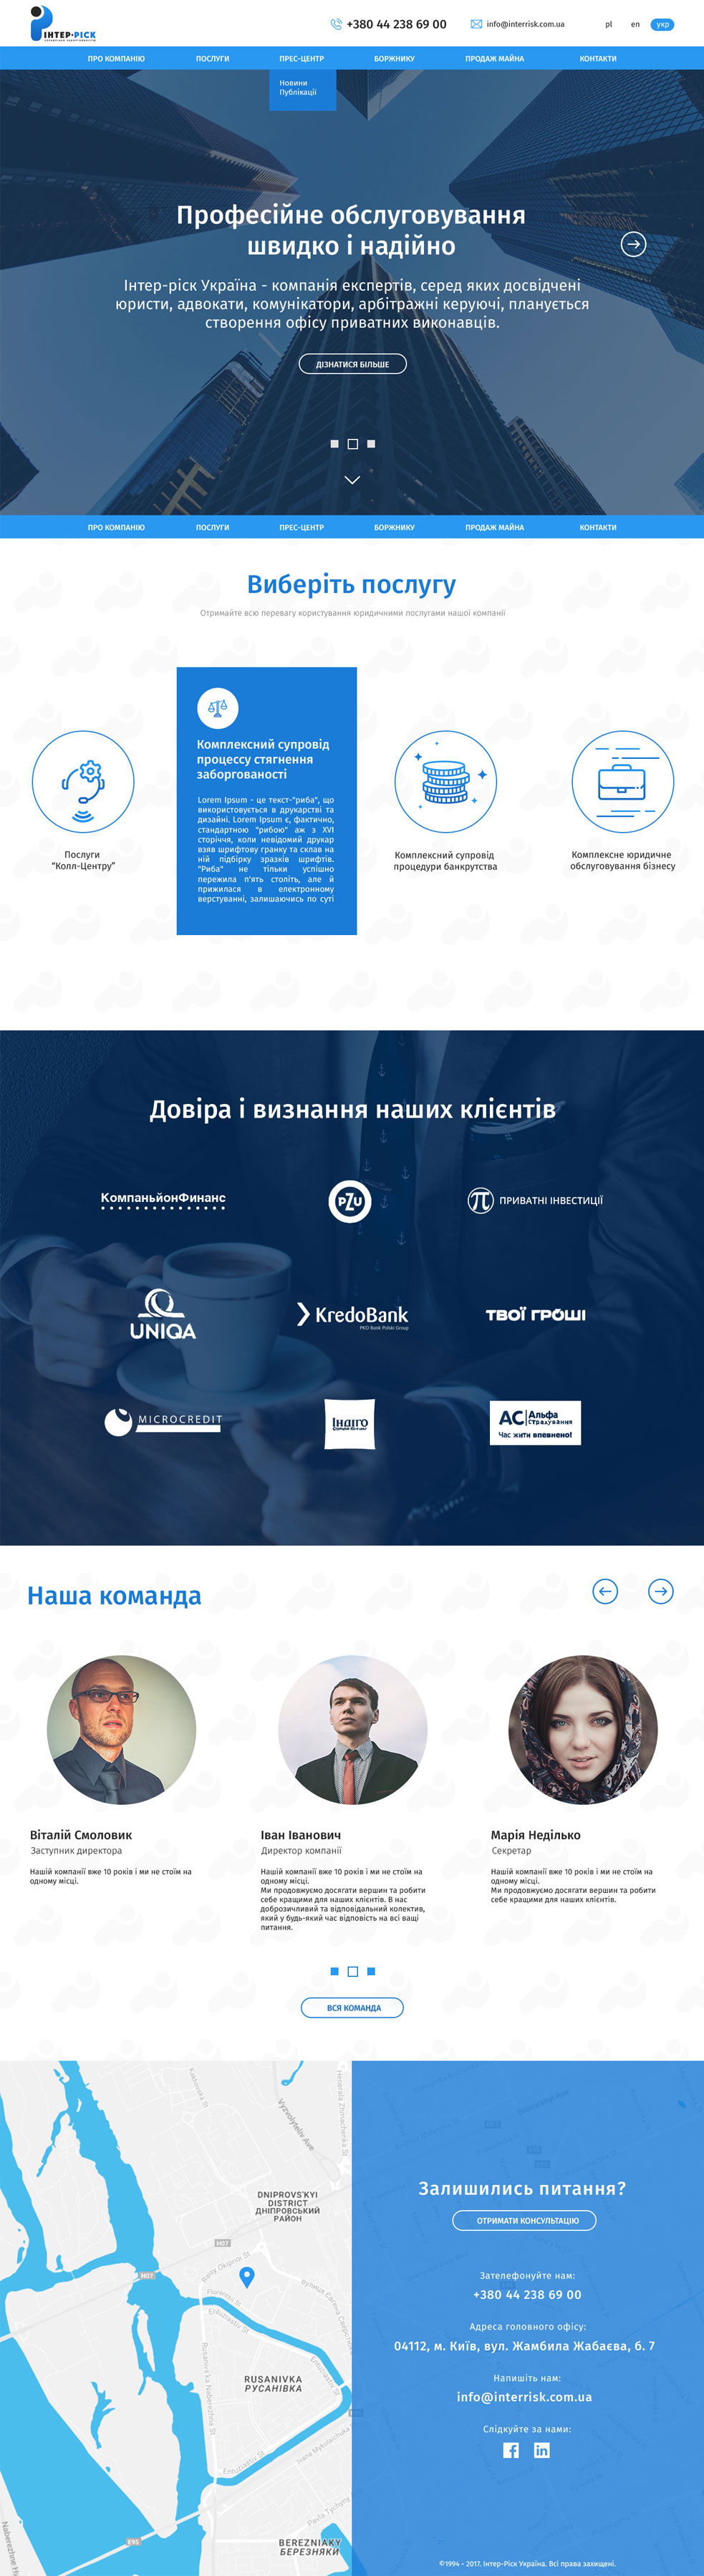 Коллекторская компания «Интер-Риск Украина»